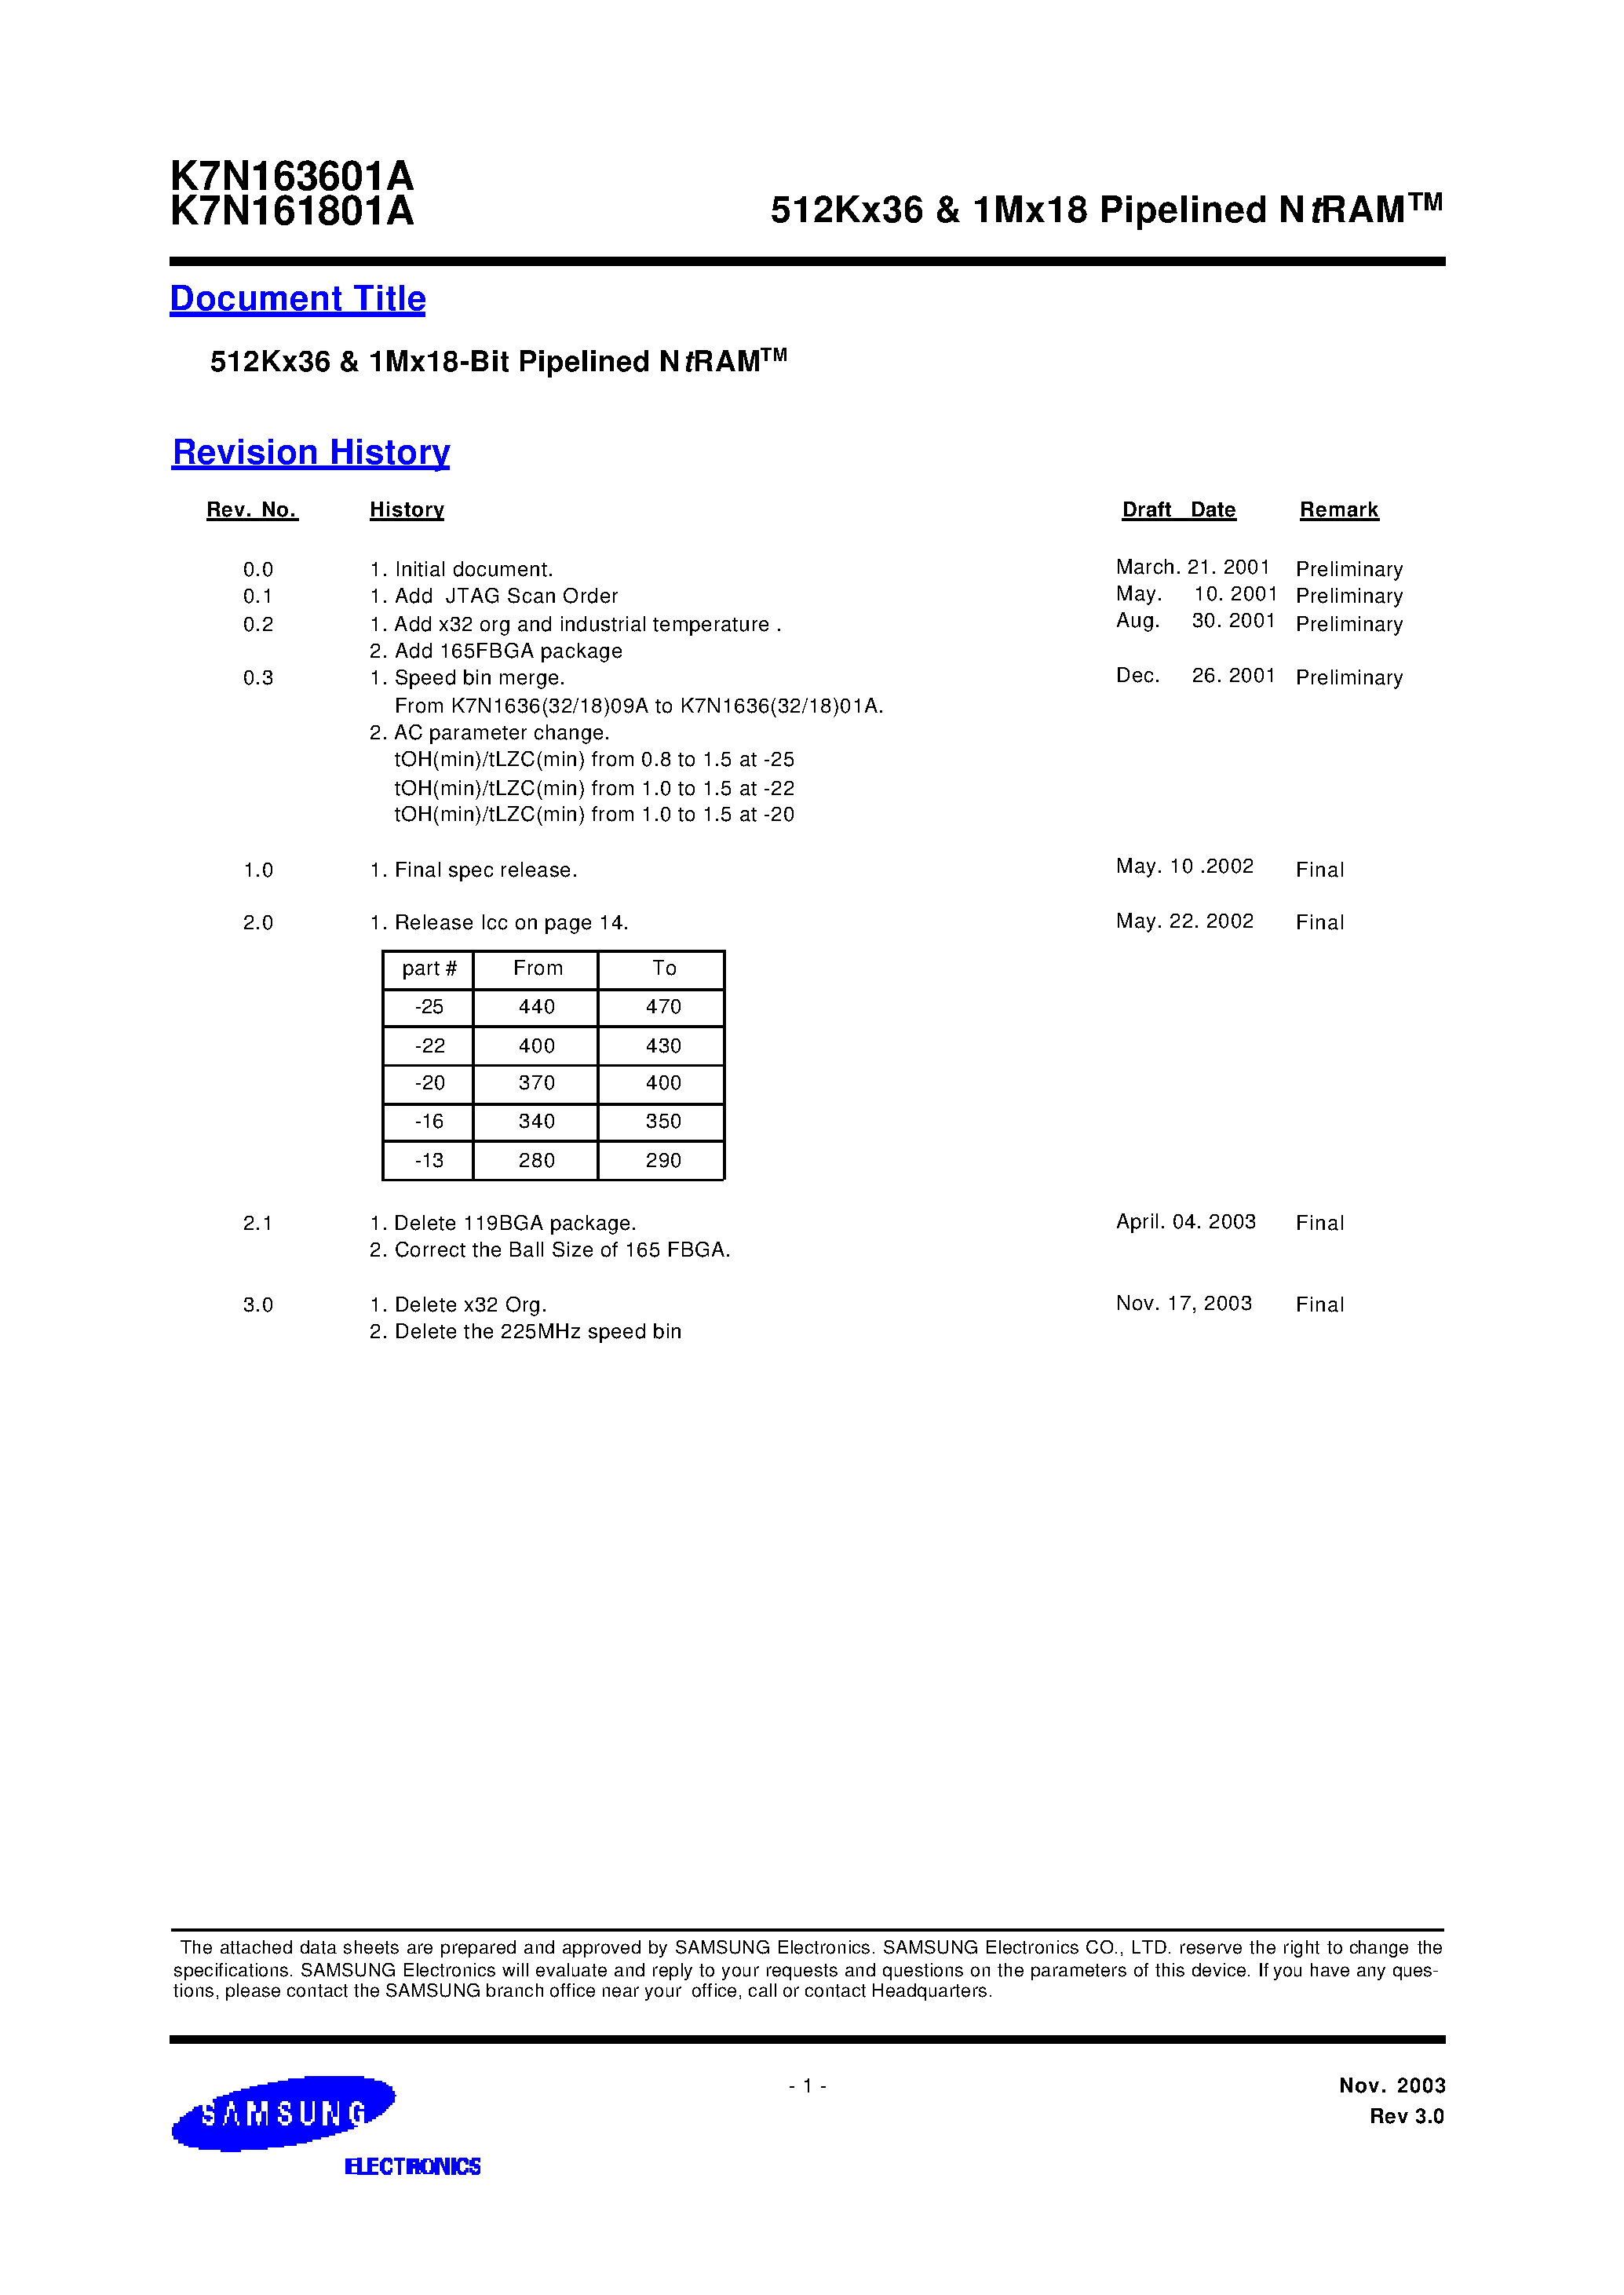 Даташит K7N161801A-Q(F)C(I)16 - 512Kx36 & 1Mx18 Pipelined NtRAM страница 1